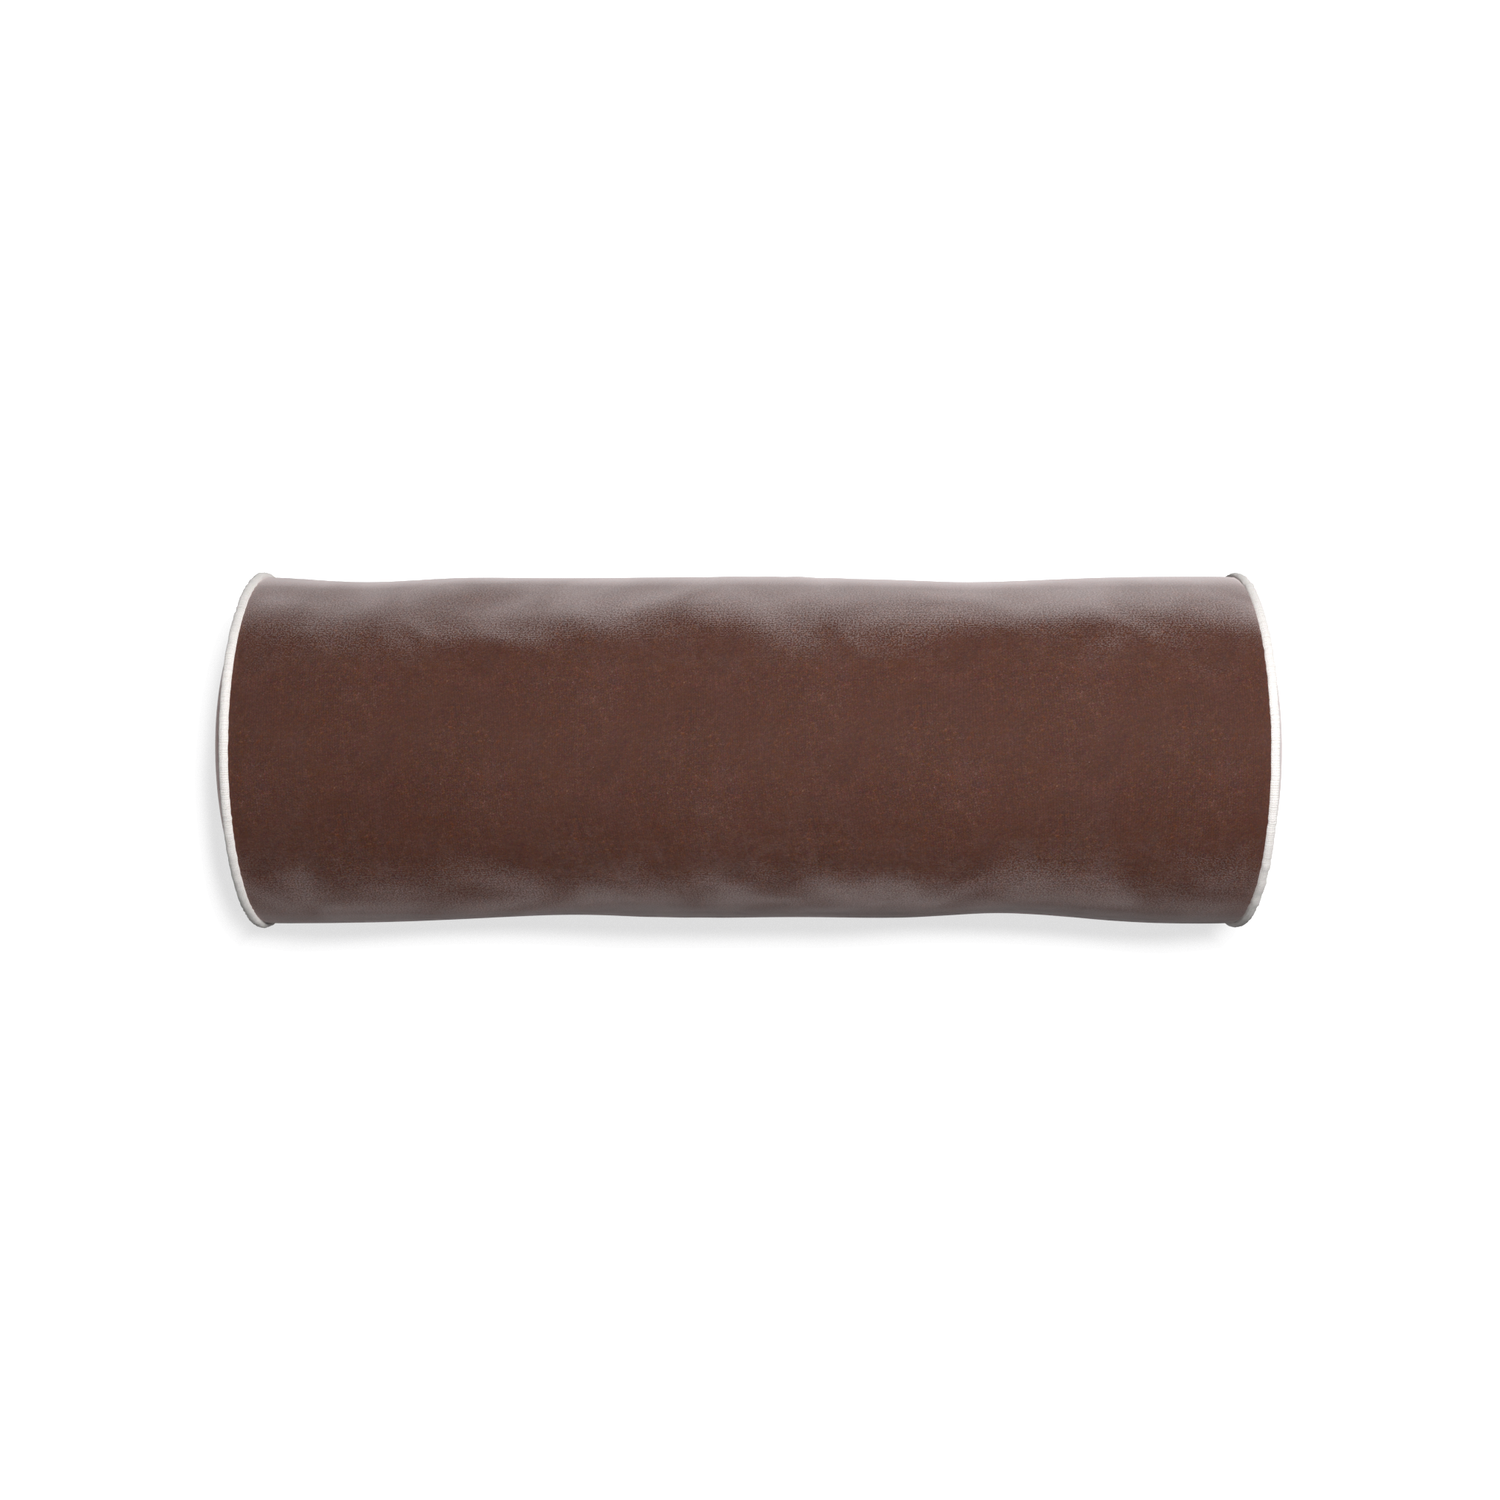 bolster brown velvet pillow with white piping